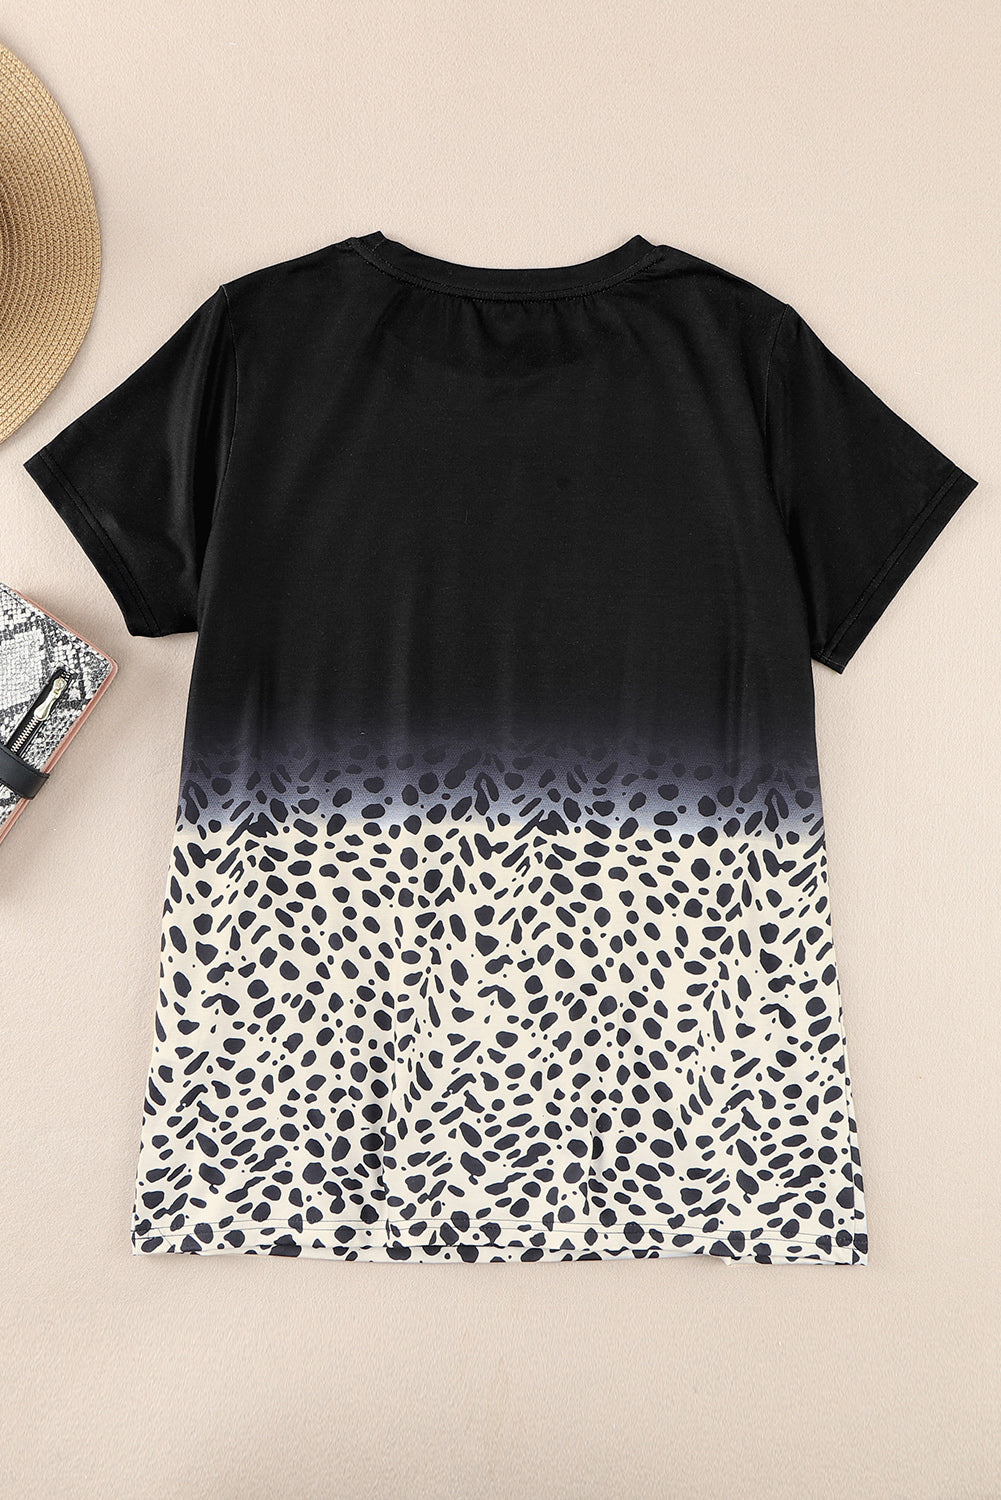 Schwarzes T-Shirt mit Ombre-Leopardenmuster